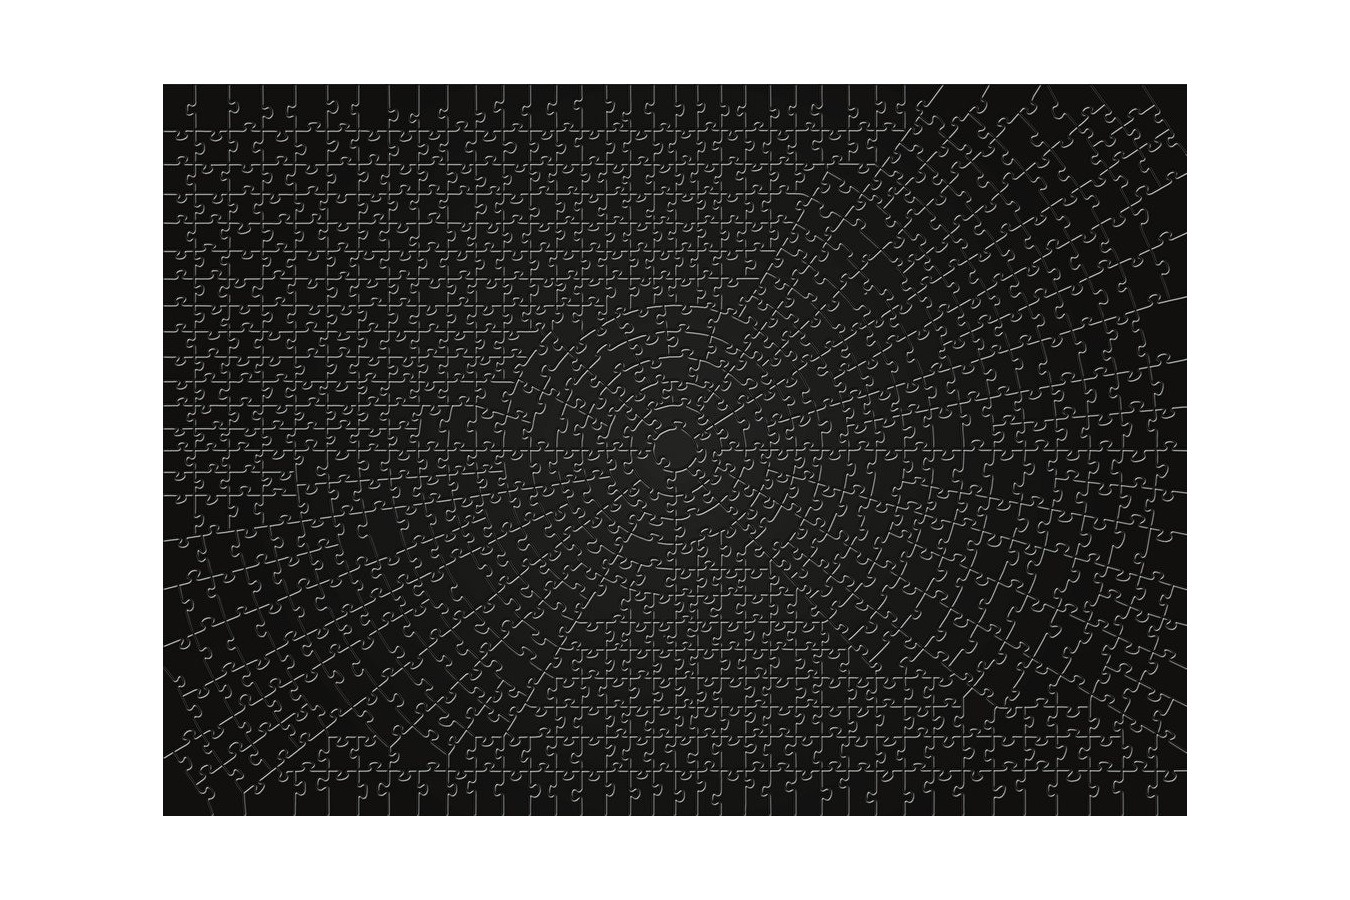 Puzzle Ravensburger - Krypt Black, 736 piese dificile (15260)